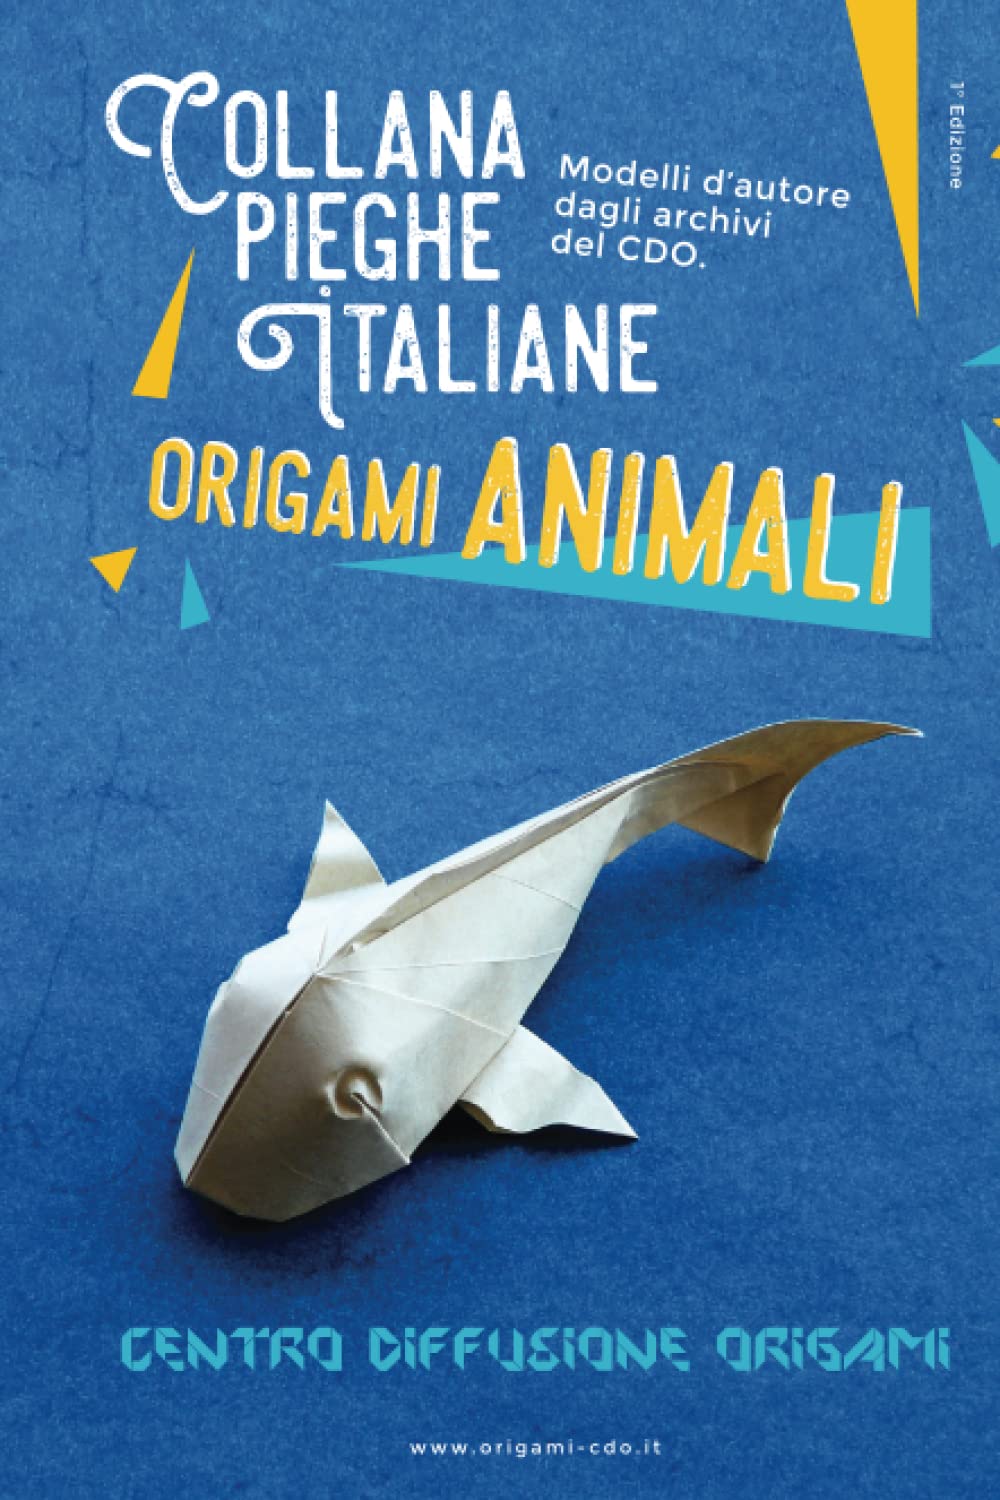 Collana pieghe Italiane - origami ANIMALI : page 48.